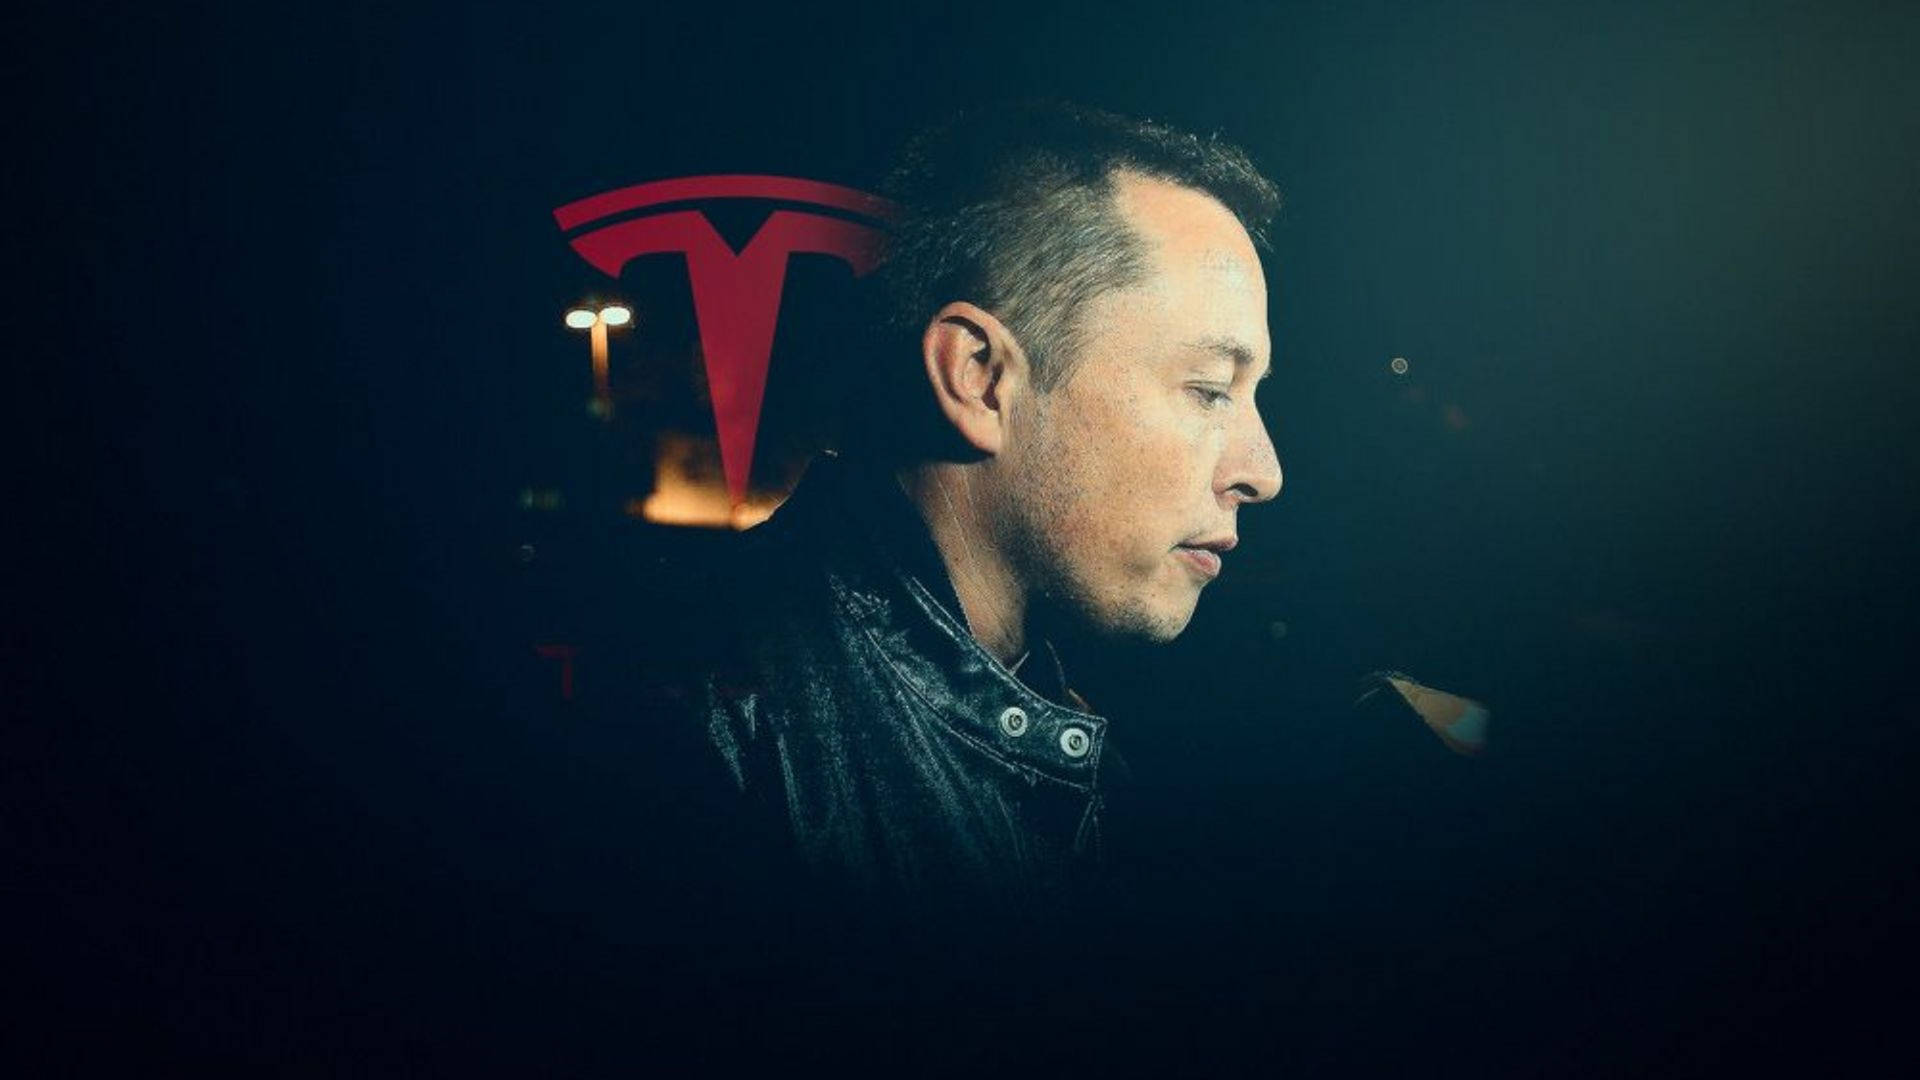 Elon Musk Tesla Dark Portrait